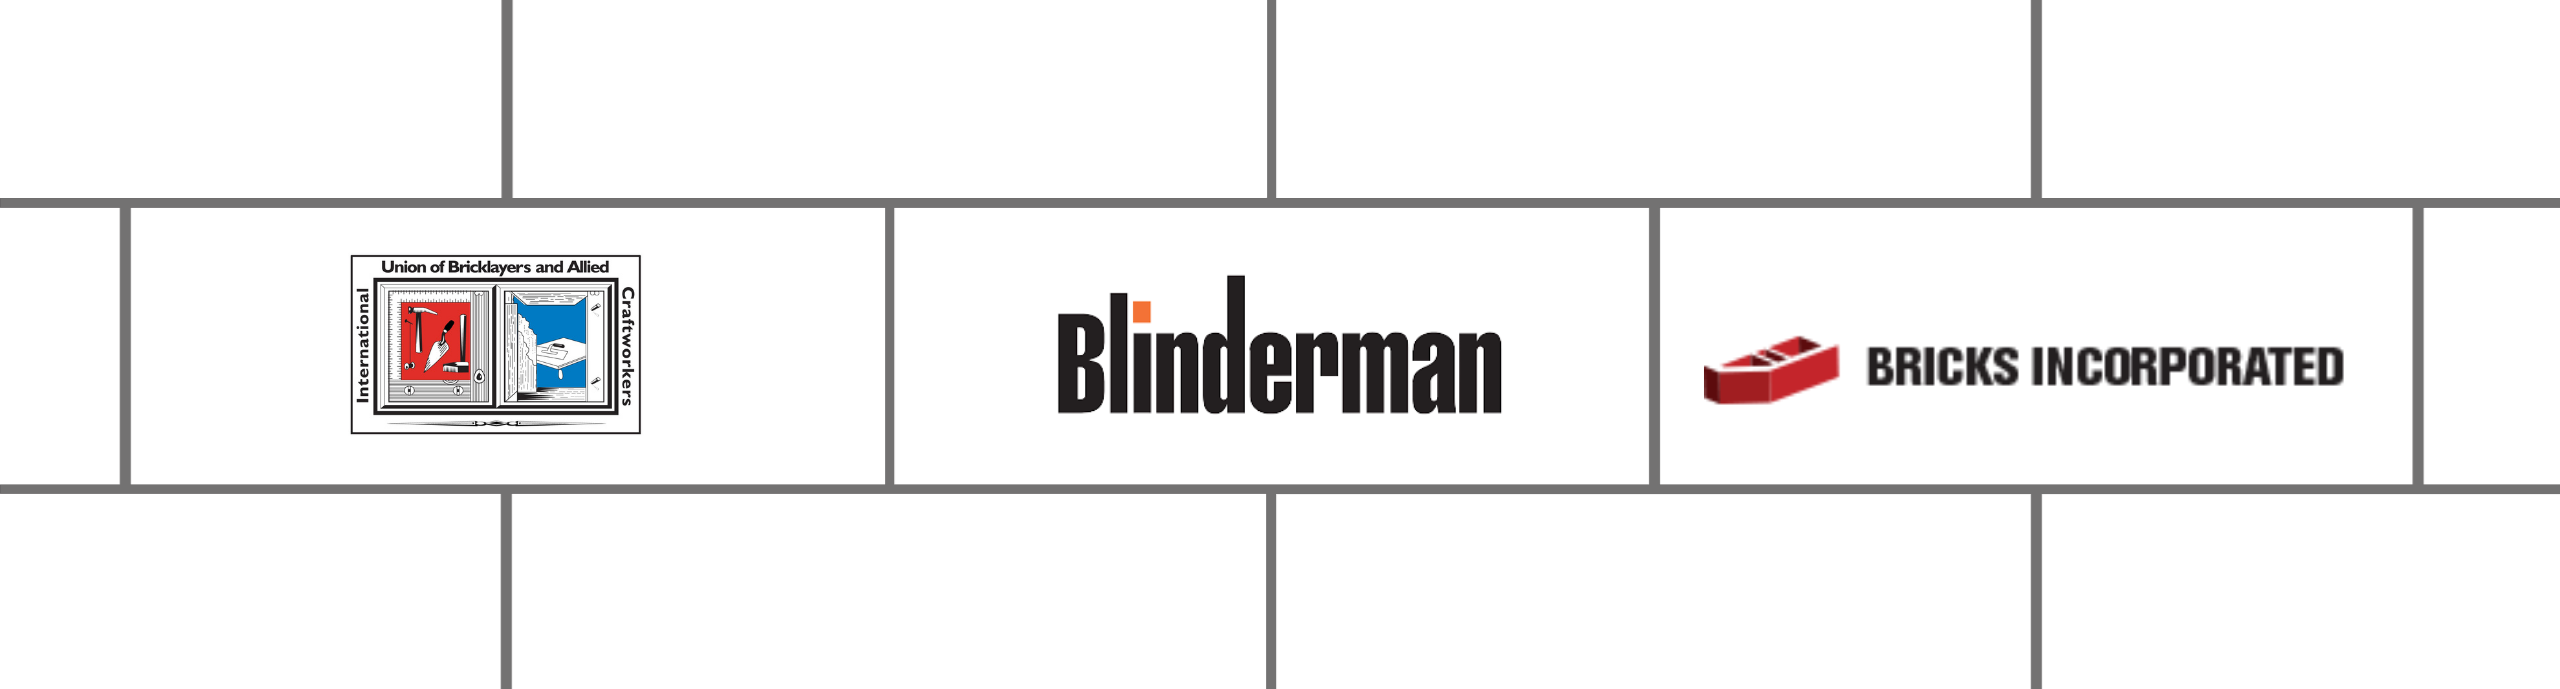 BAC, Blinderman, and Bricks, Inc. logos